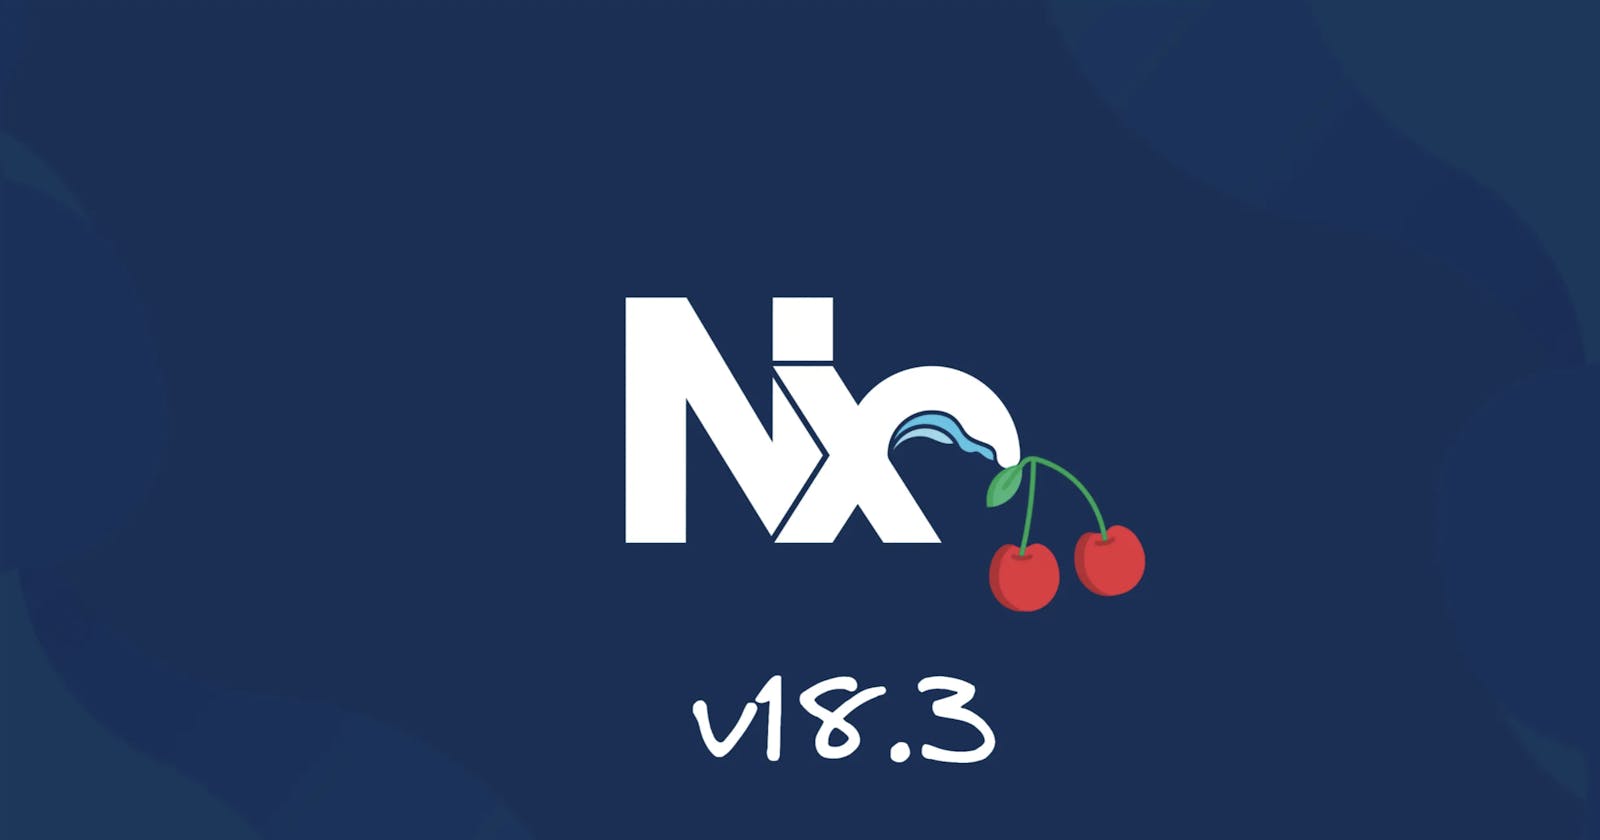 🍒 Cherry-Picked Nx v18.3 Updates